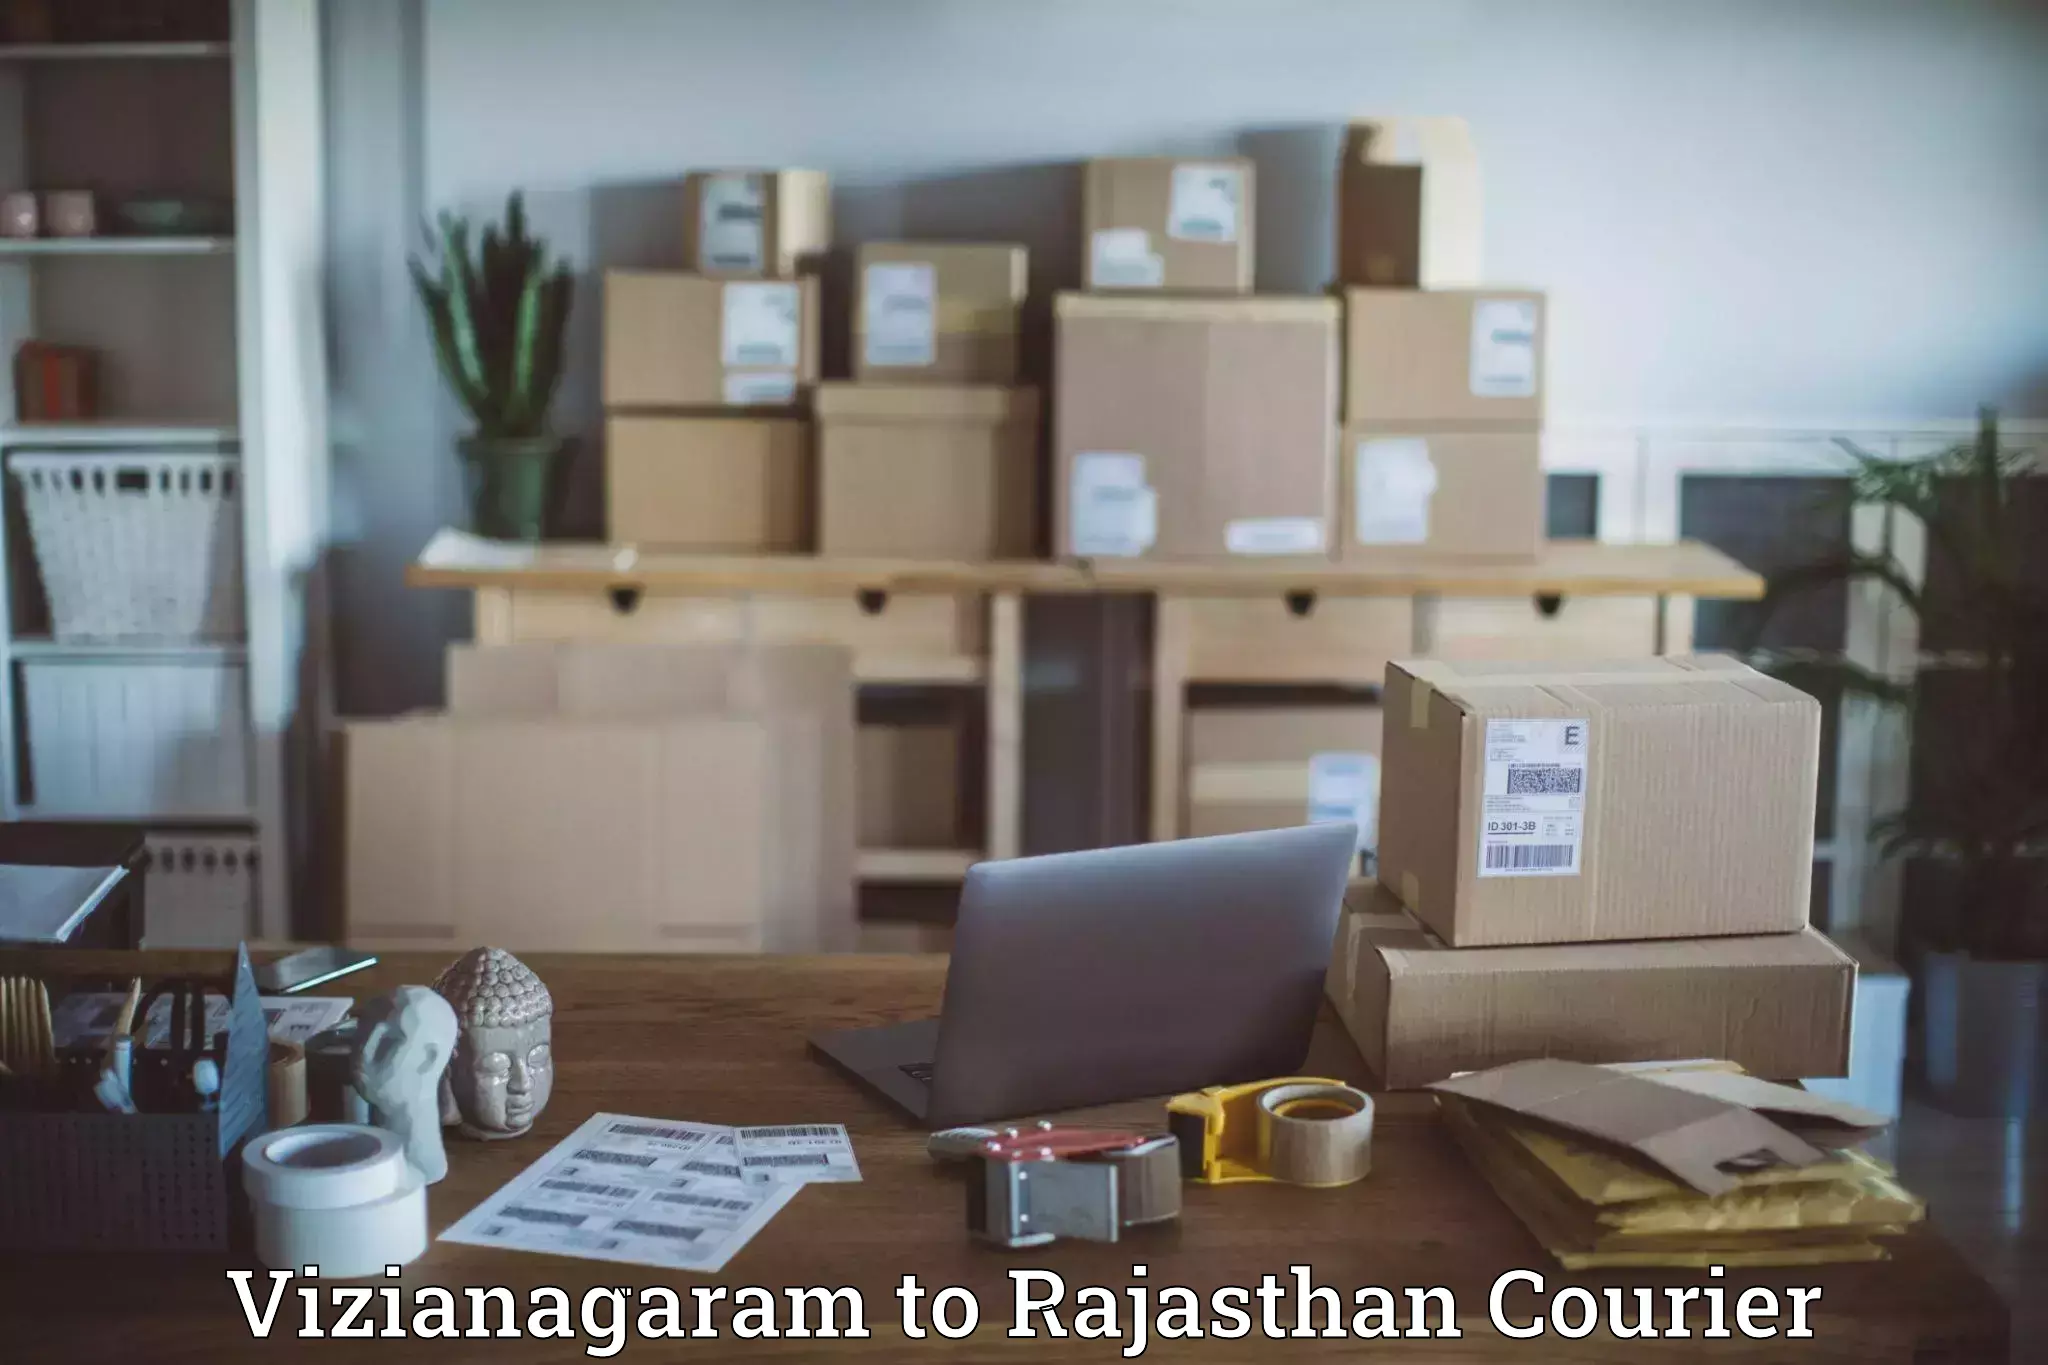 Round-the-clock parcel delivery Vizianagaram to Chittorgarh